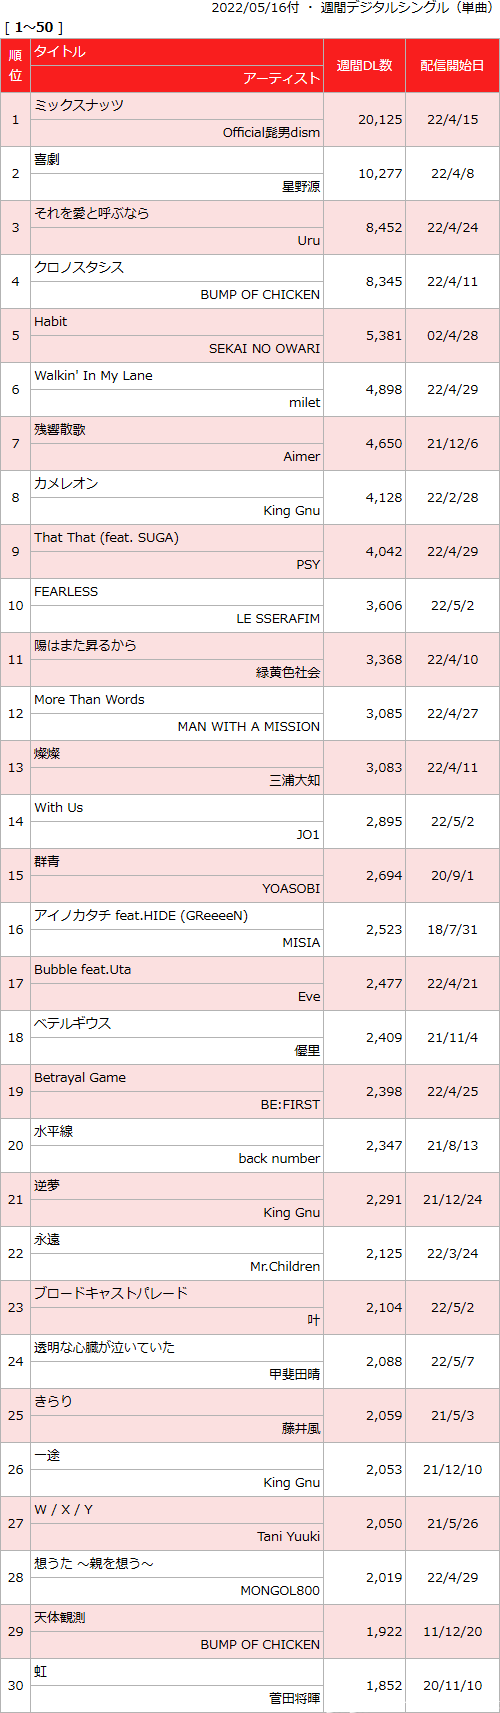 日本动漫歌曲销量周榜・22/05/16付　间谍过家家op配信2.0万周冠